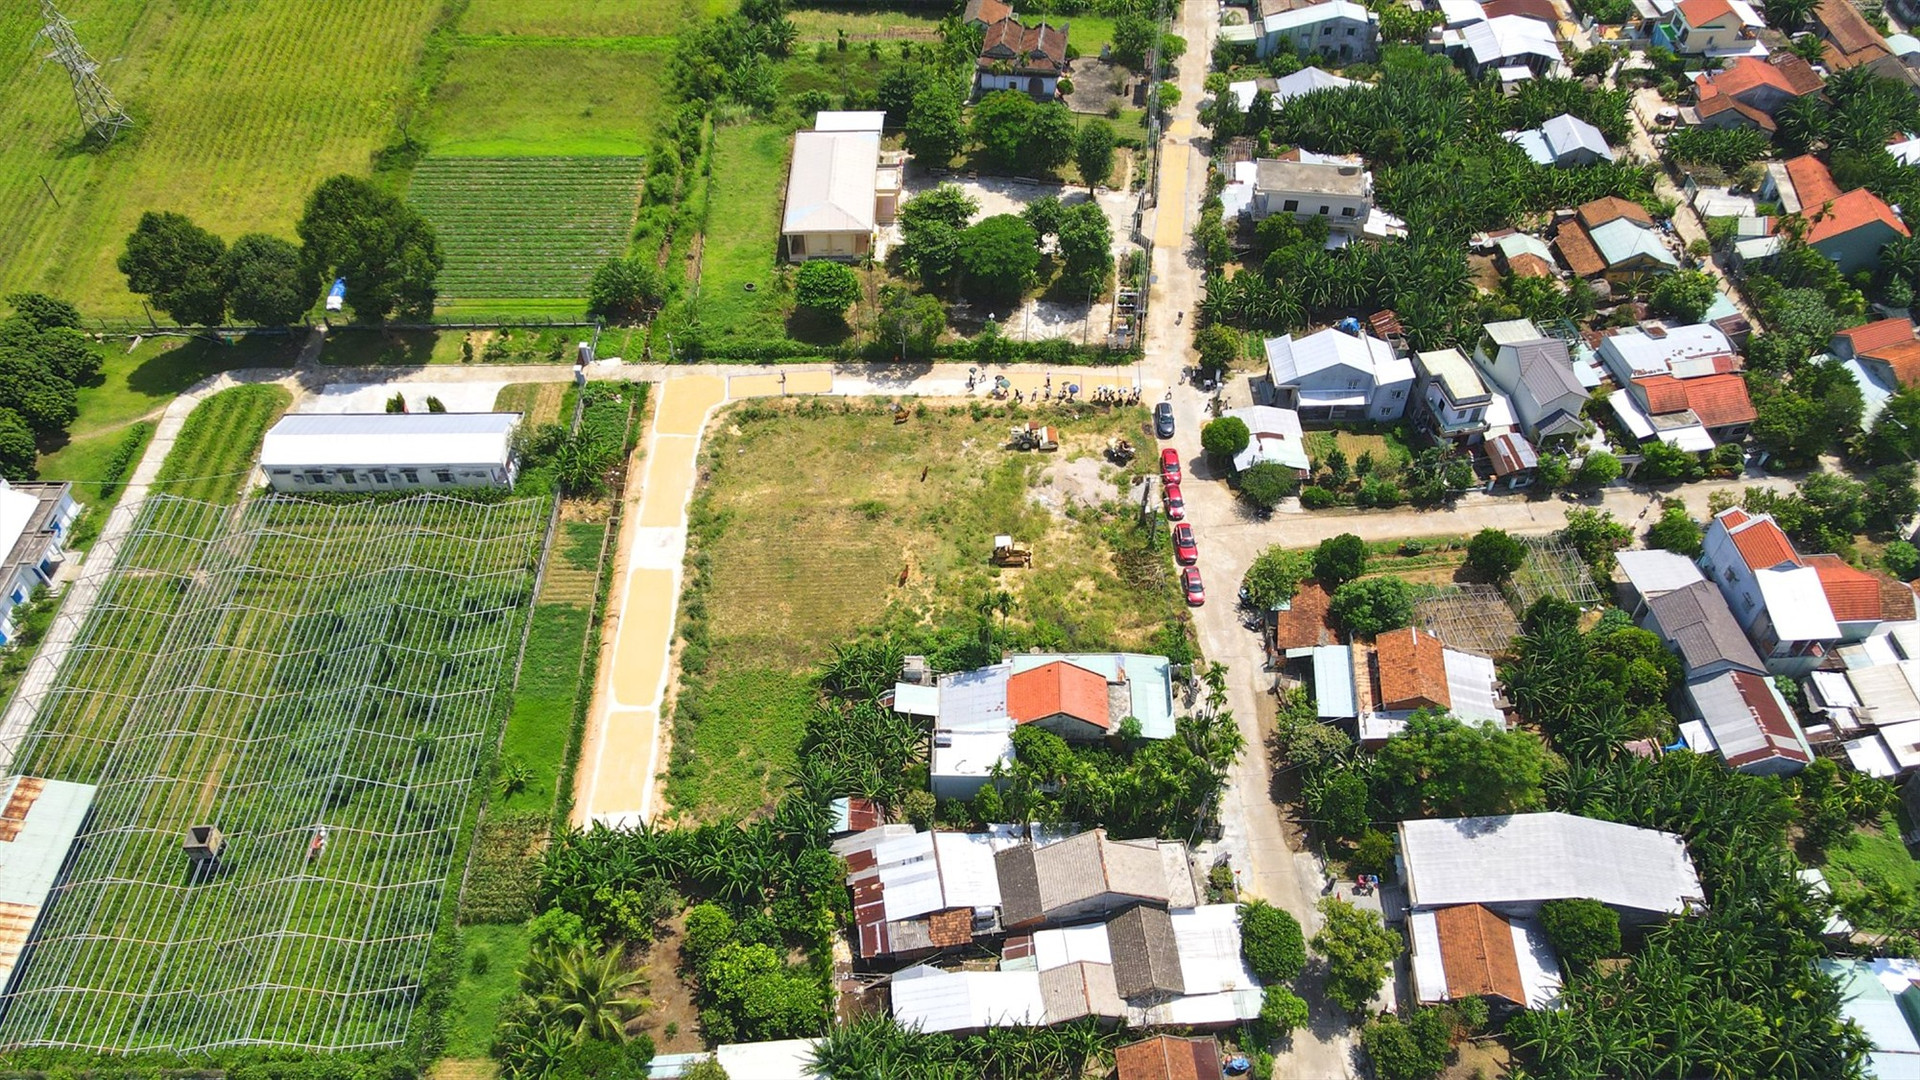 Ban quản lý Dự án – Quỹ đất H.Duy Xuyên vừa đấu giá 14 sản phẩm đất nền Cụm công nghiệp Sedo nhằm phát triển quỹ đất ở địa phương.